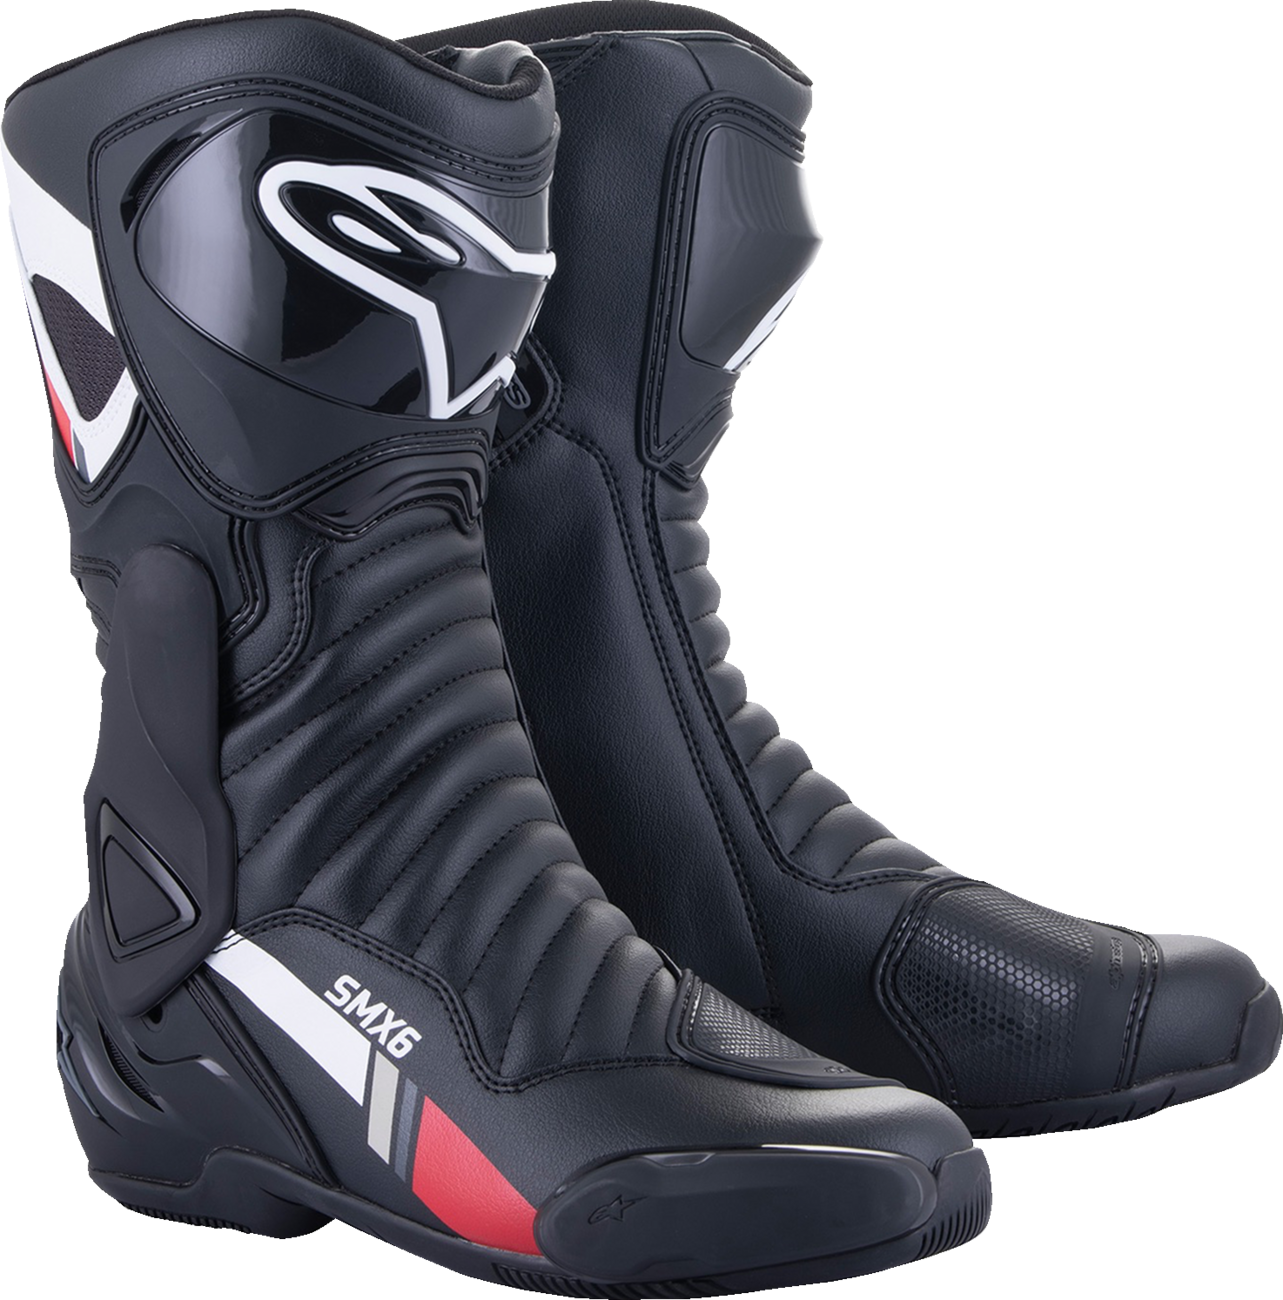 ALPINESTARS SMX-6 v2 Boots - Black/White/Gray - US 14 / EU 50 2223017-153-50